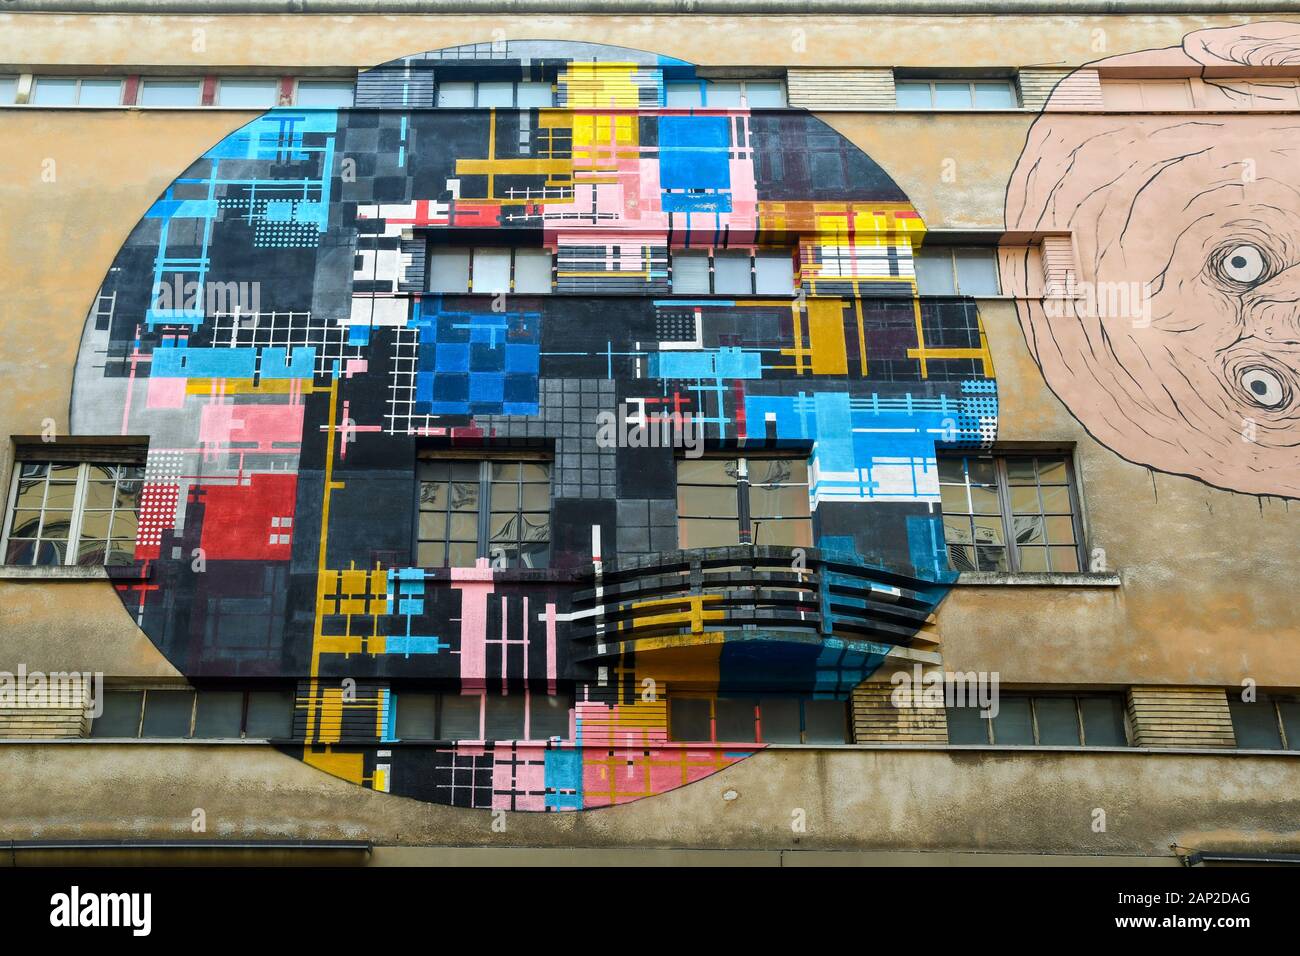 Primo piano del "City Circle" (2016) dell'artista di strada Zedz, che rappresenta una mappa schematica del quartiere di San Salvario, Torino, Piemonte, Italia Foto Stock